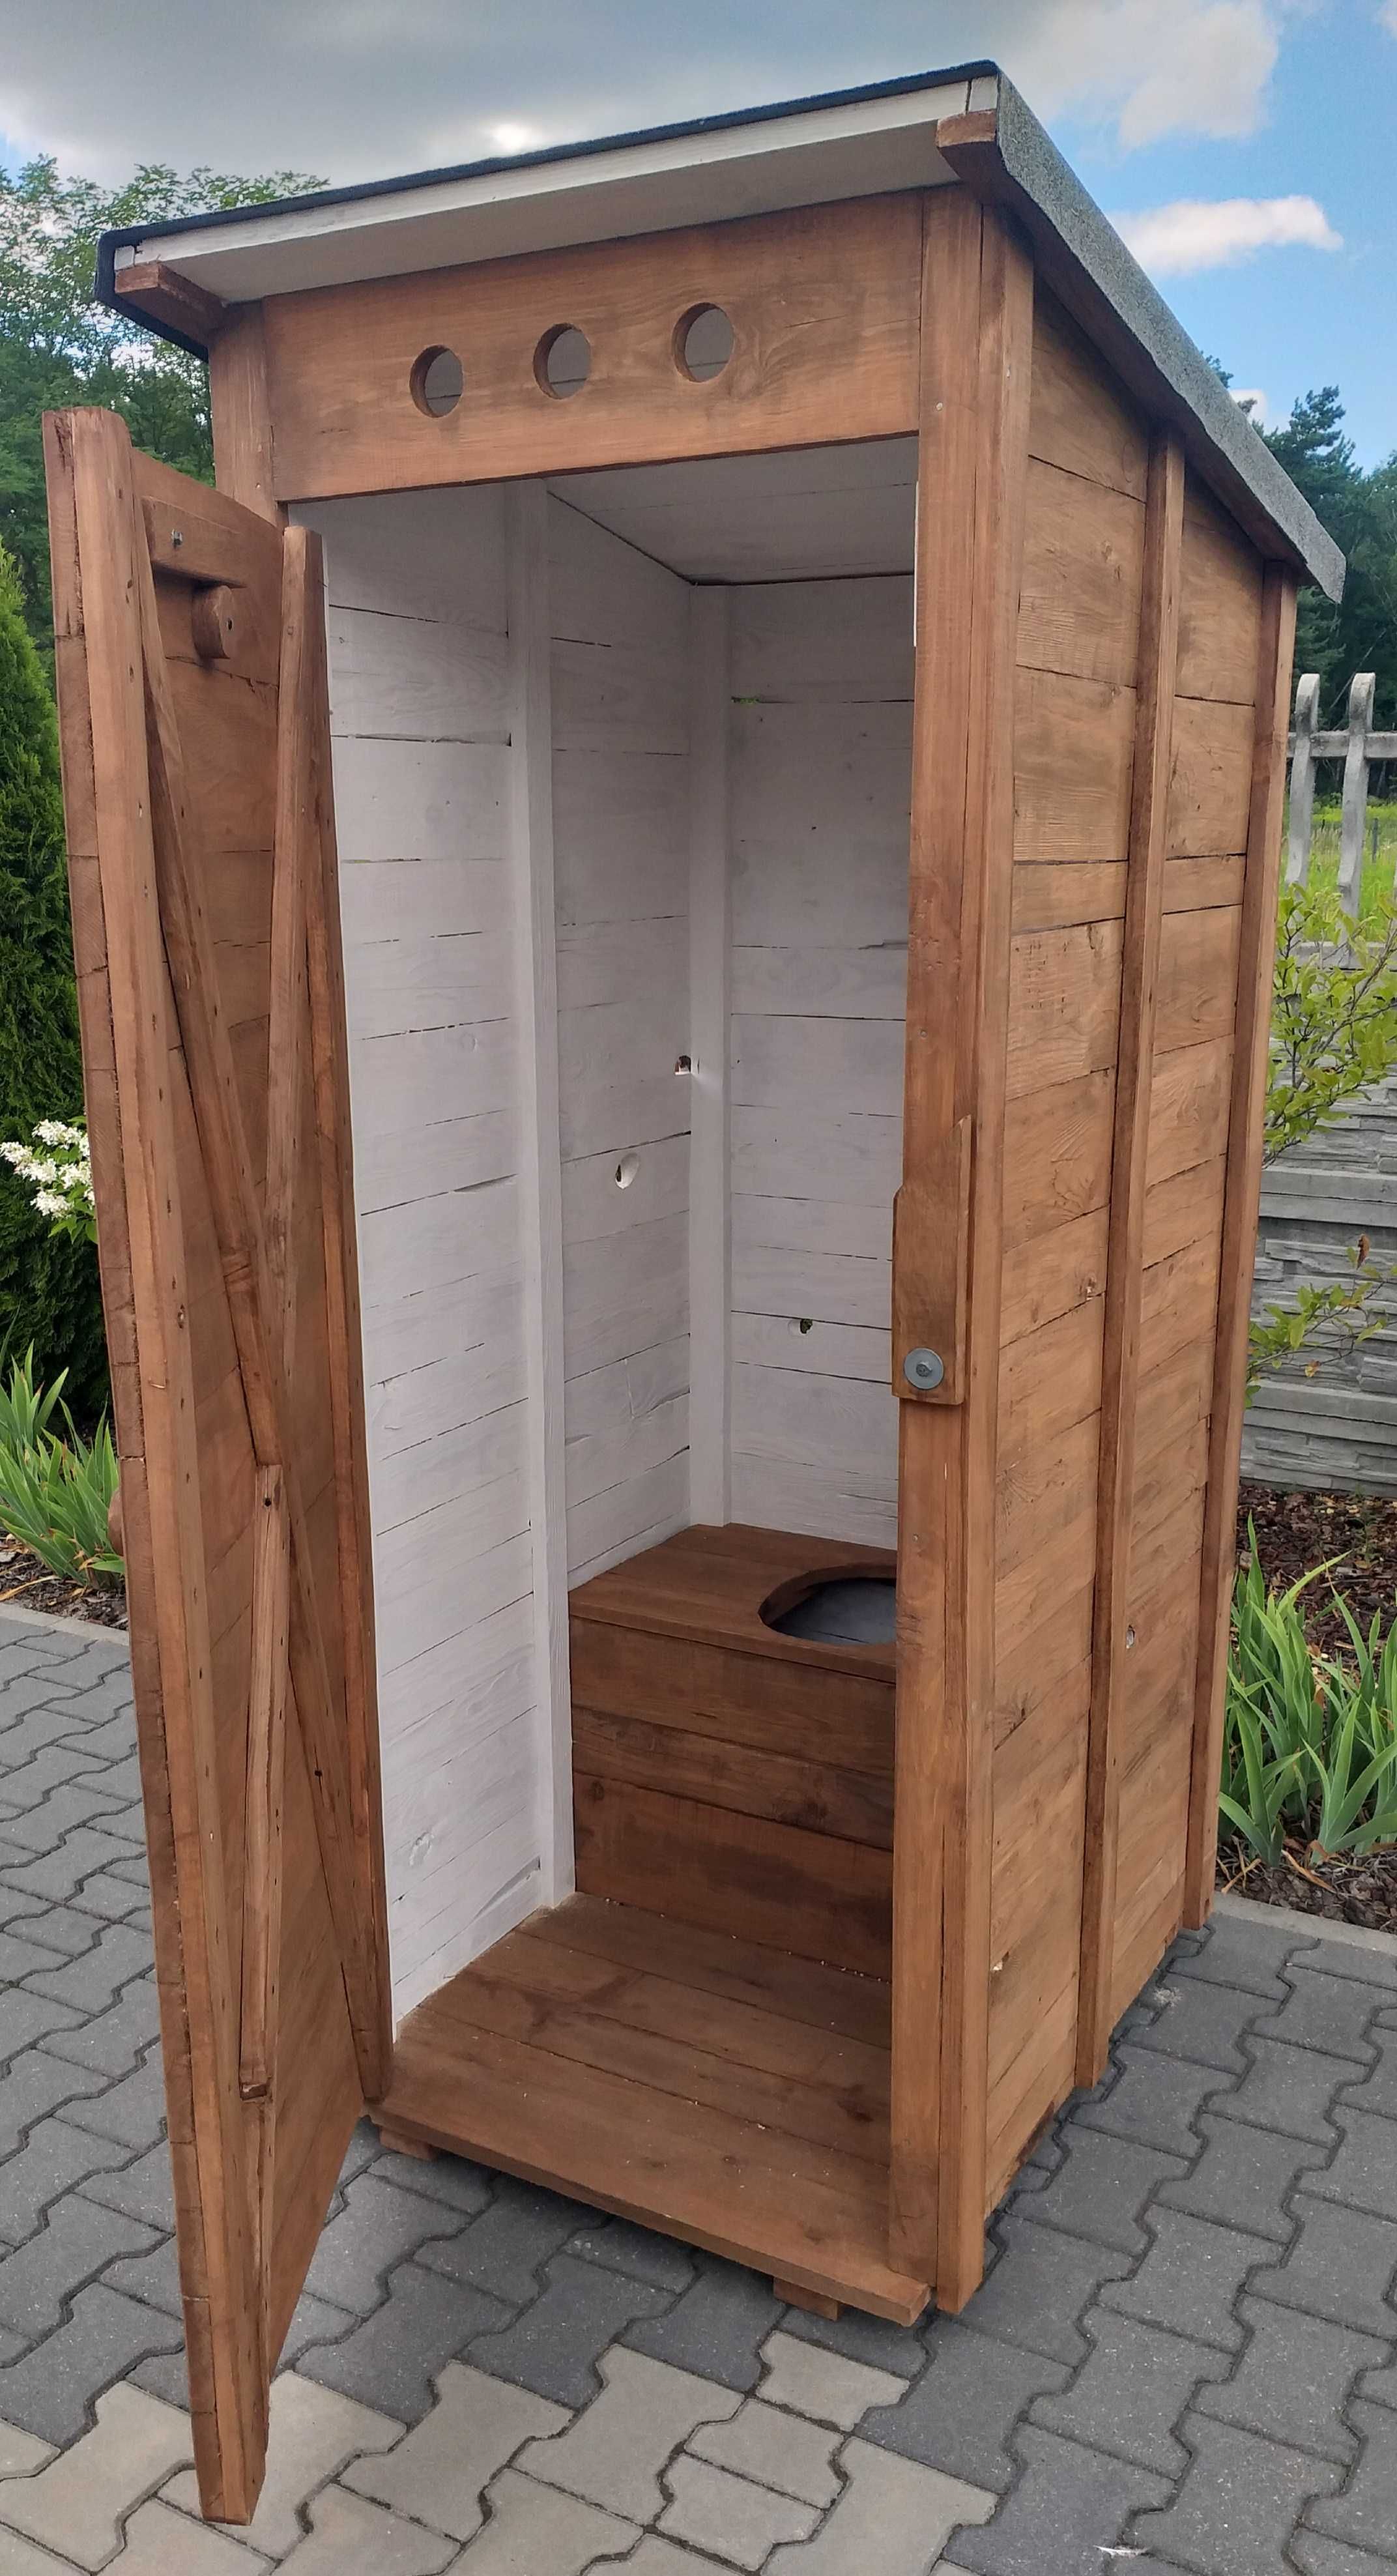 Nowy Wychodek, toaleta ECOWC drewniane ogrodowe